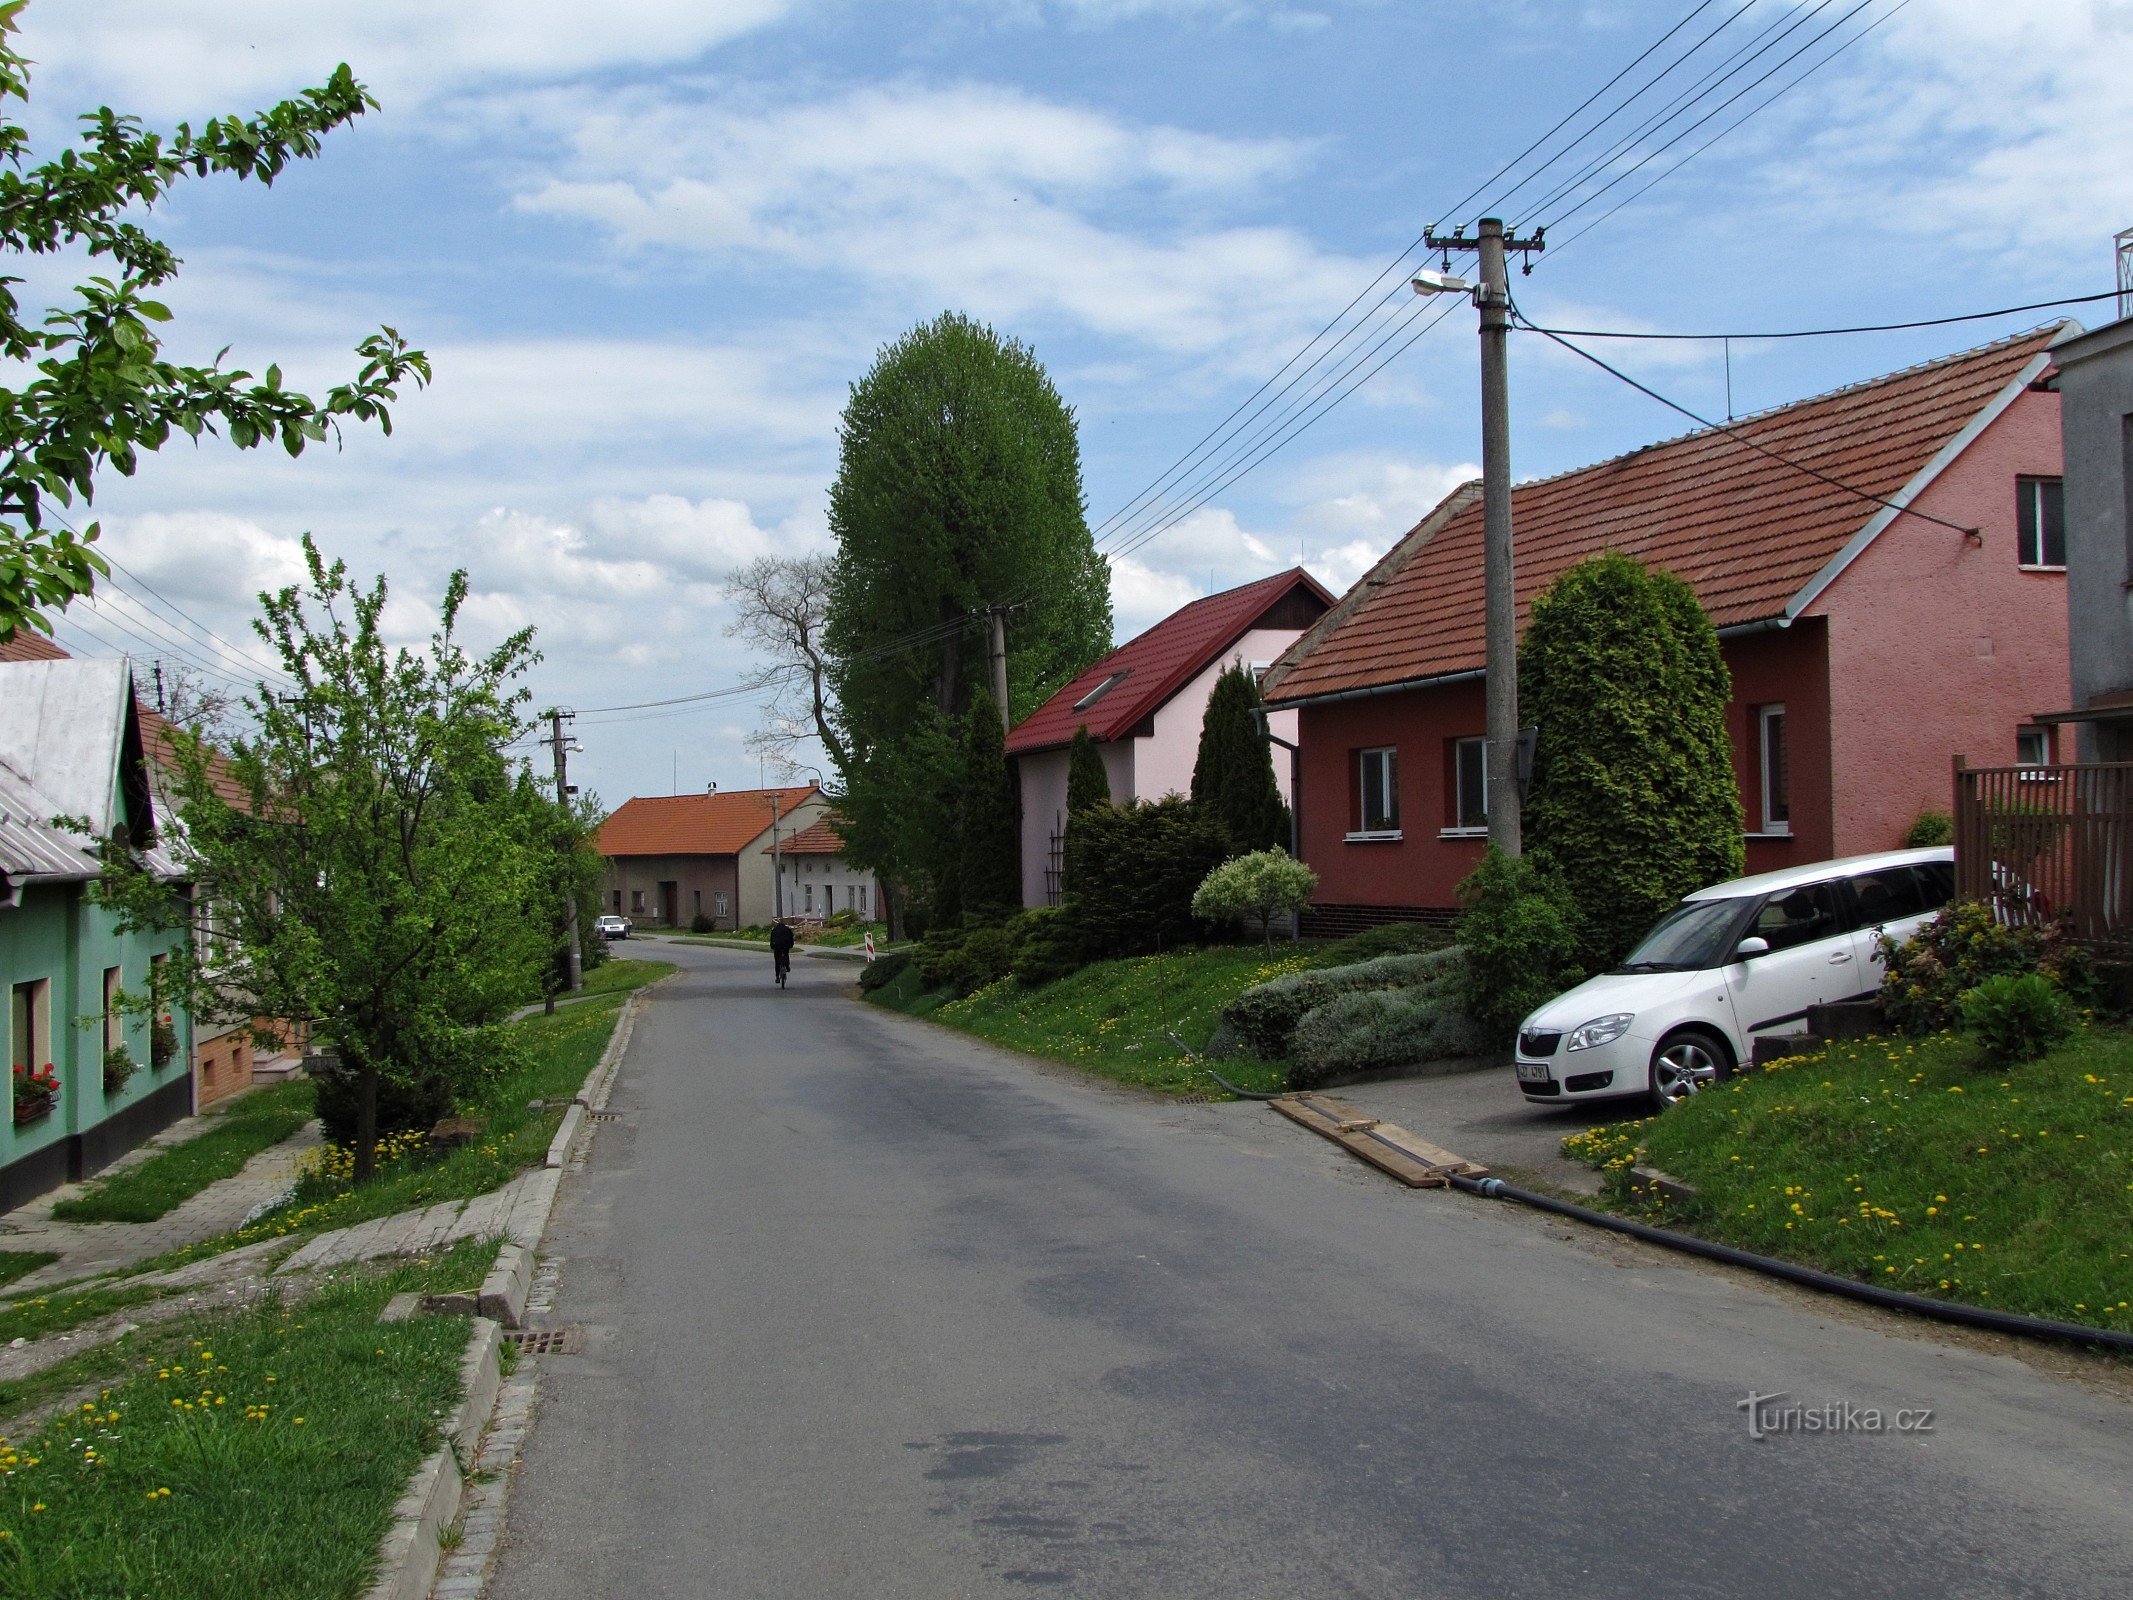 Nová Dědina - đôi nét về ngôi làng